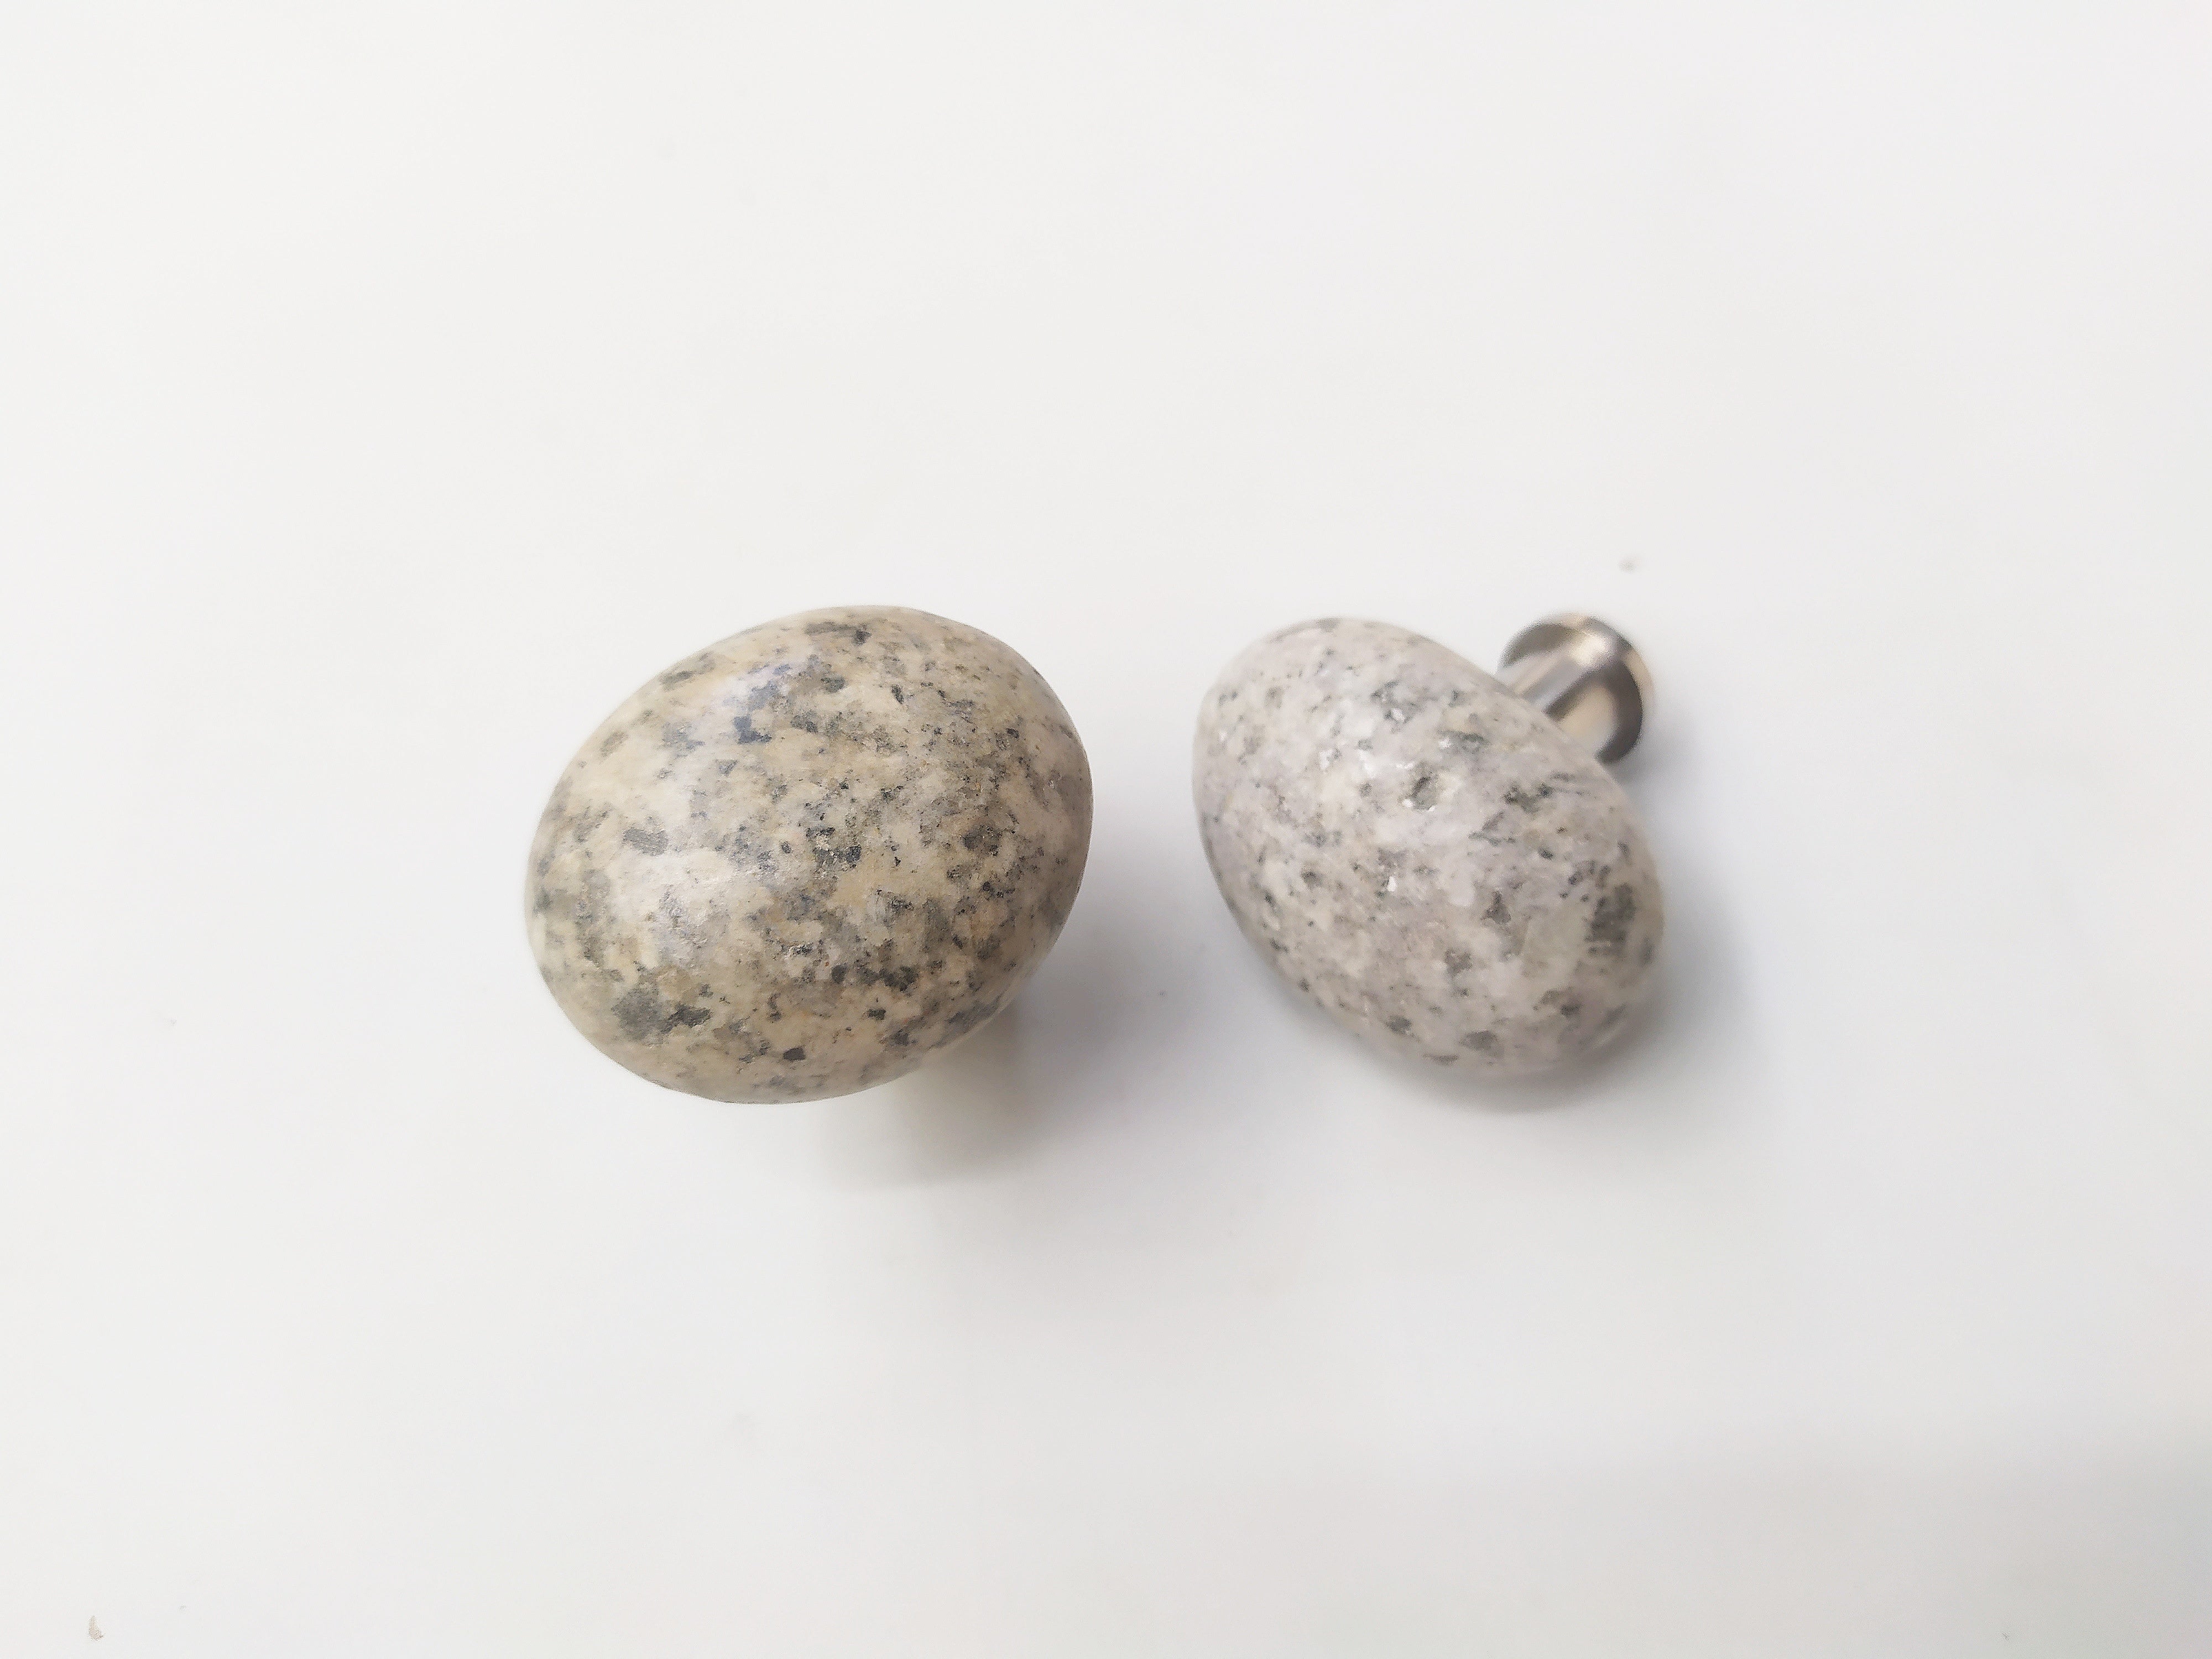 Natural sea stone knob - Speckle river stone knob